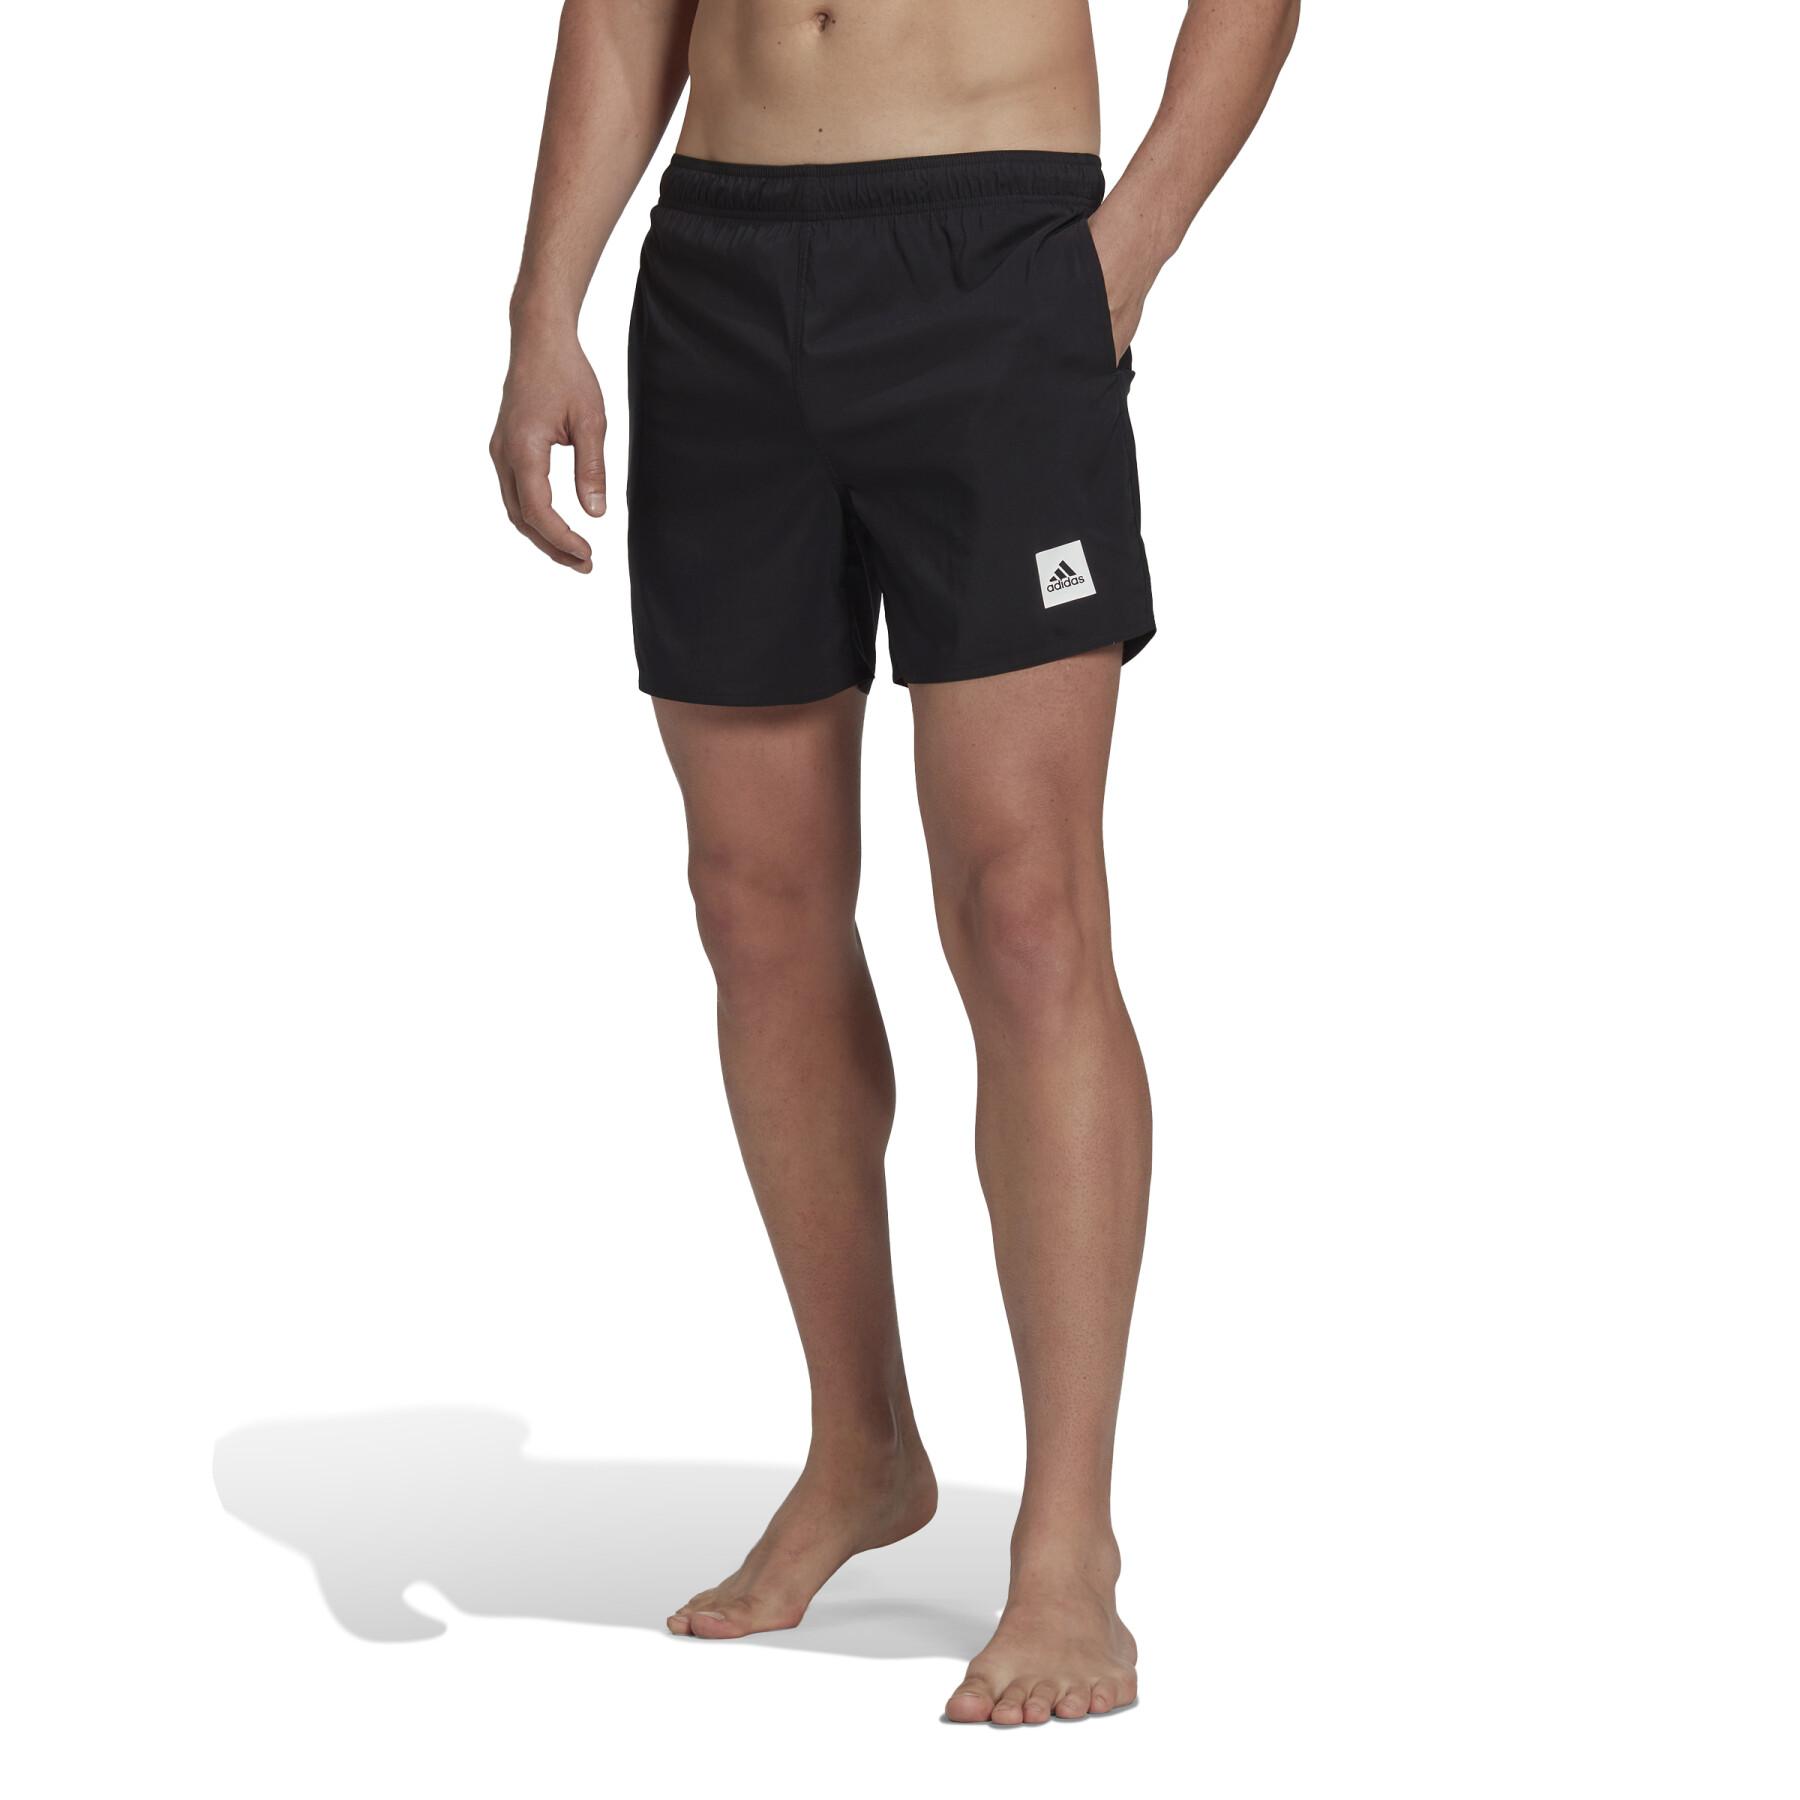 Plain short swim shorts adidas